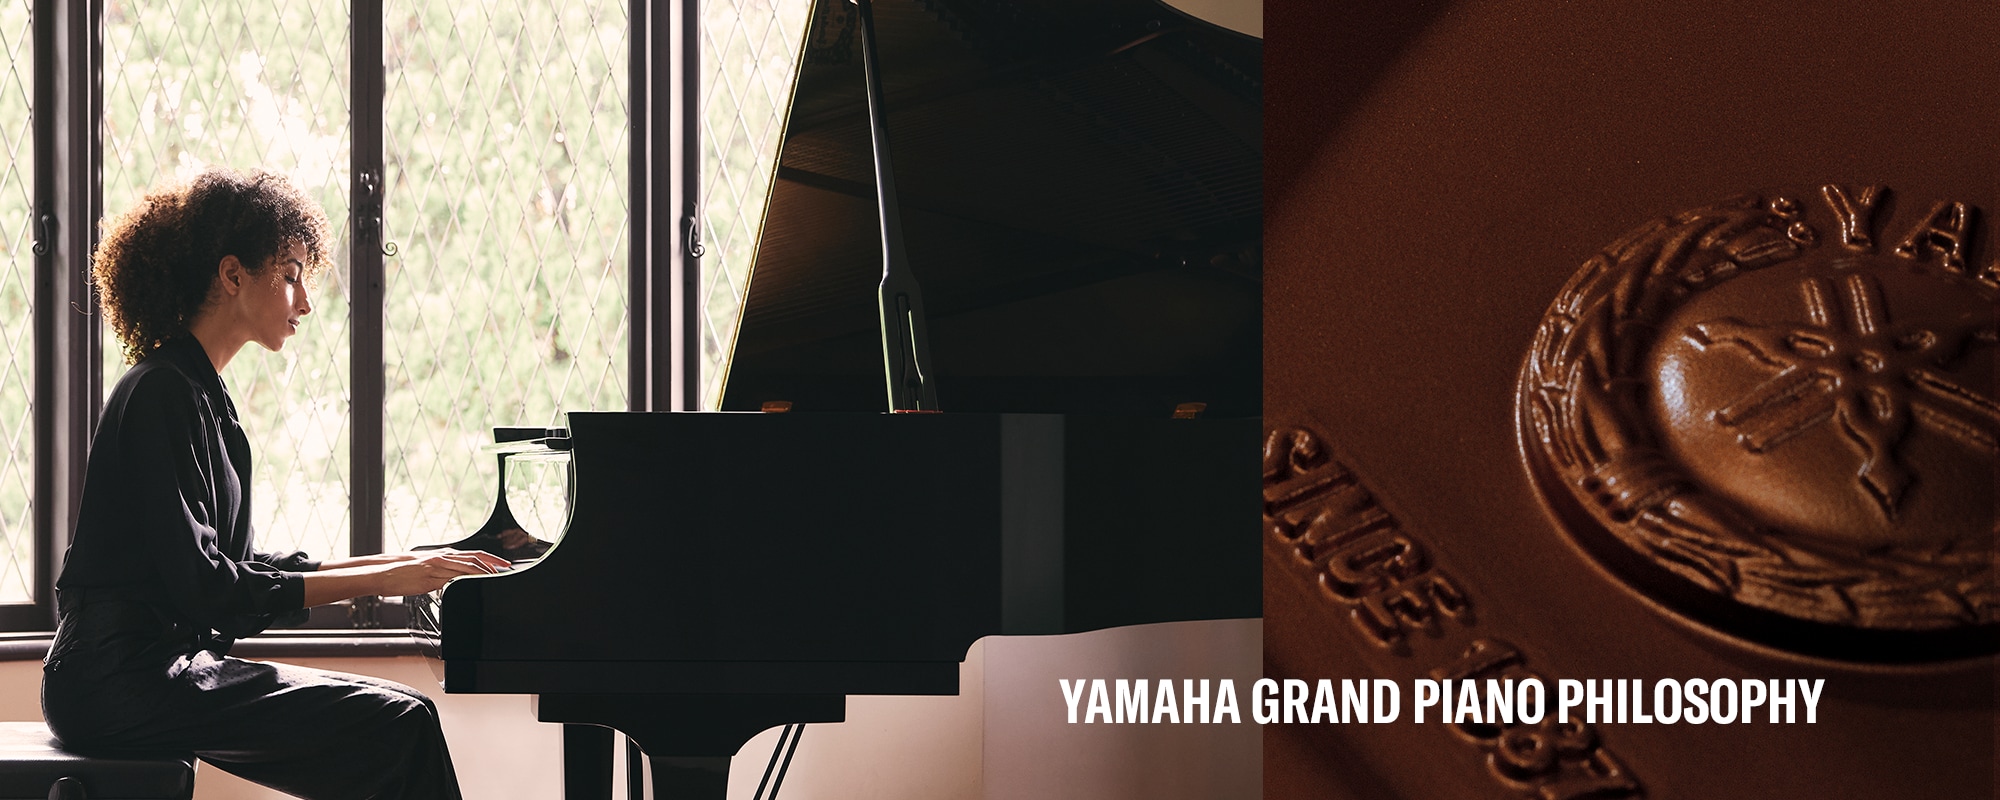 Visuel principal du piano à queue Yamaha Philosophie